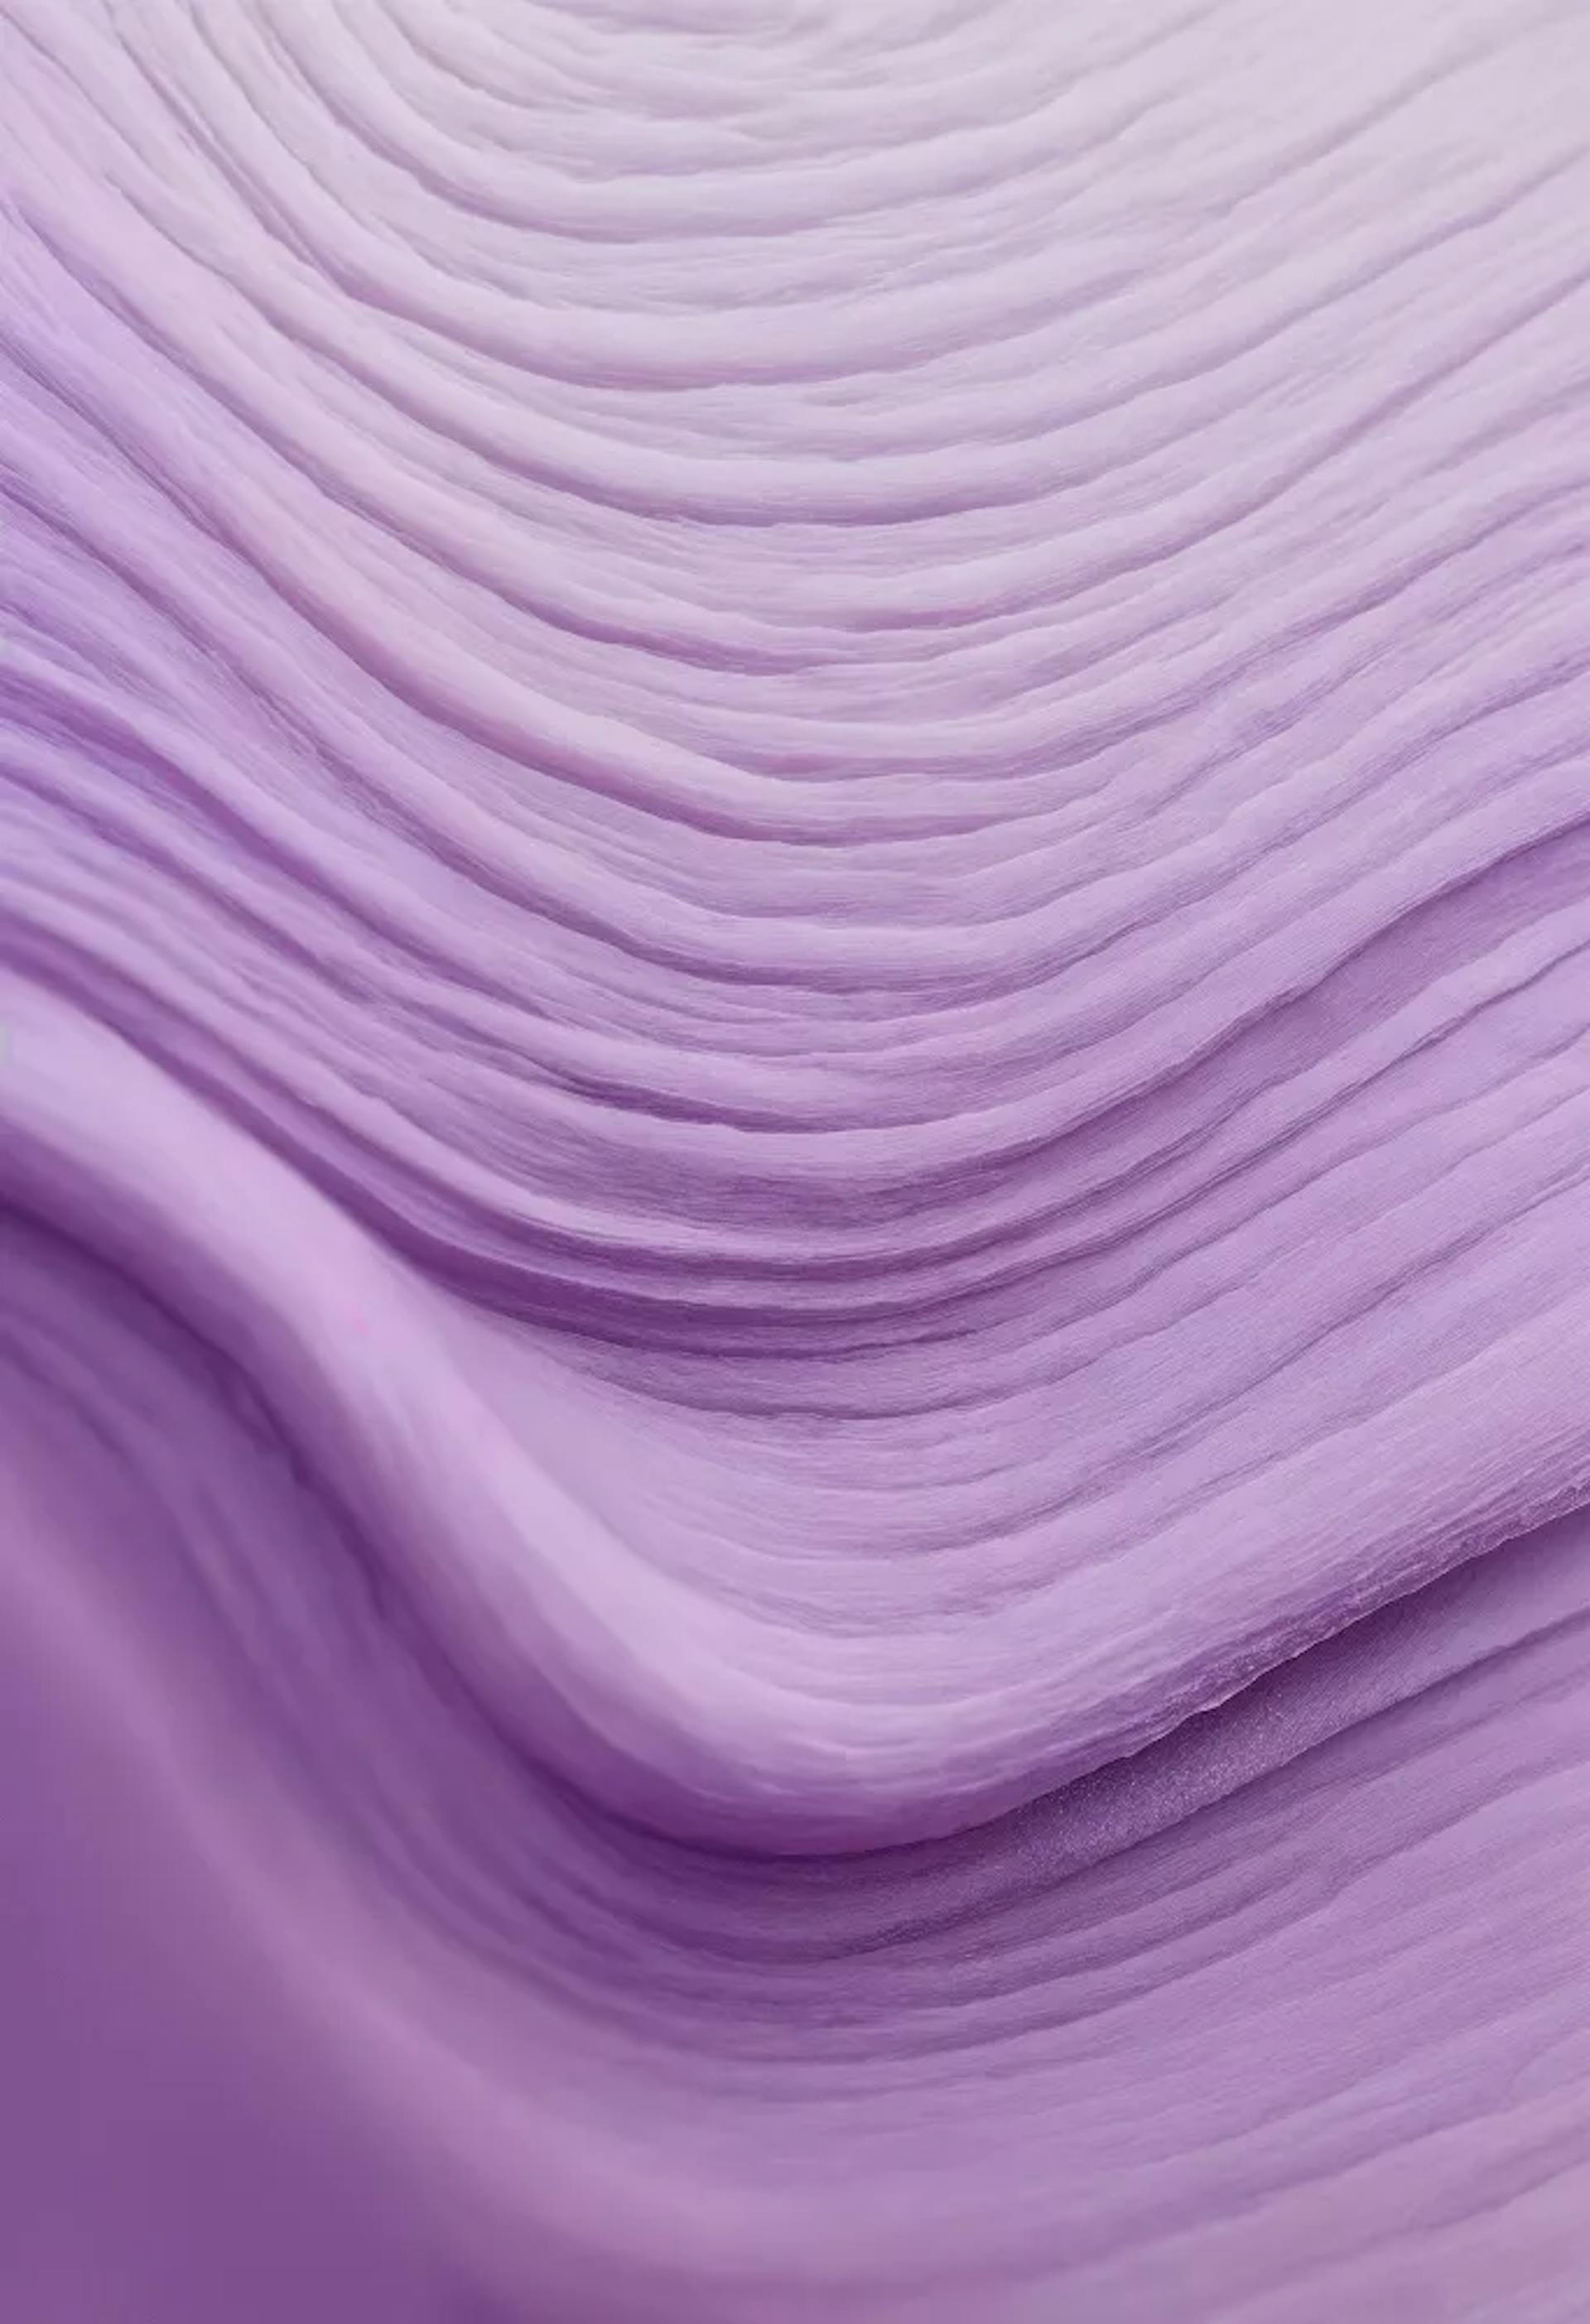 Abstrait violet lavande qui donne une impression de profondeur et de dimension